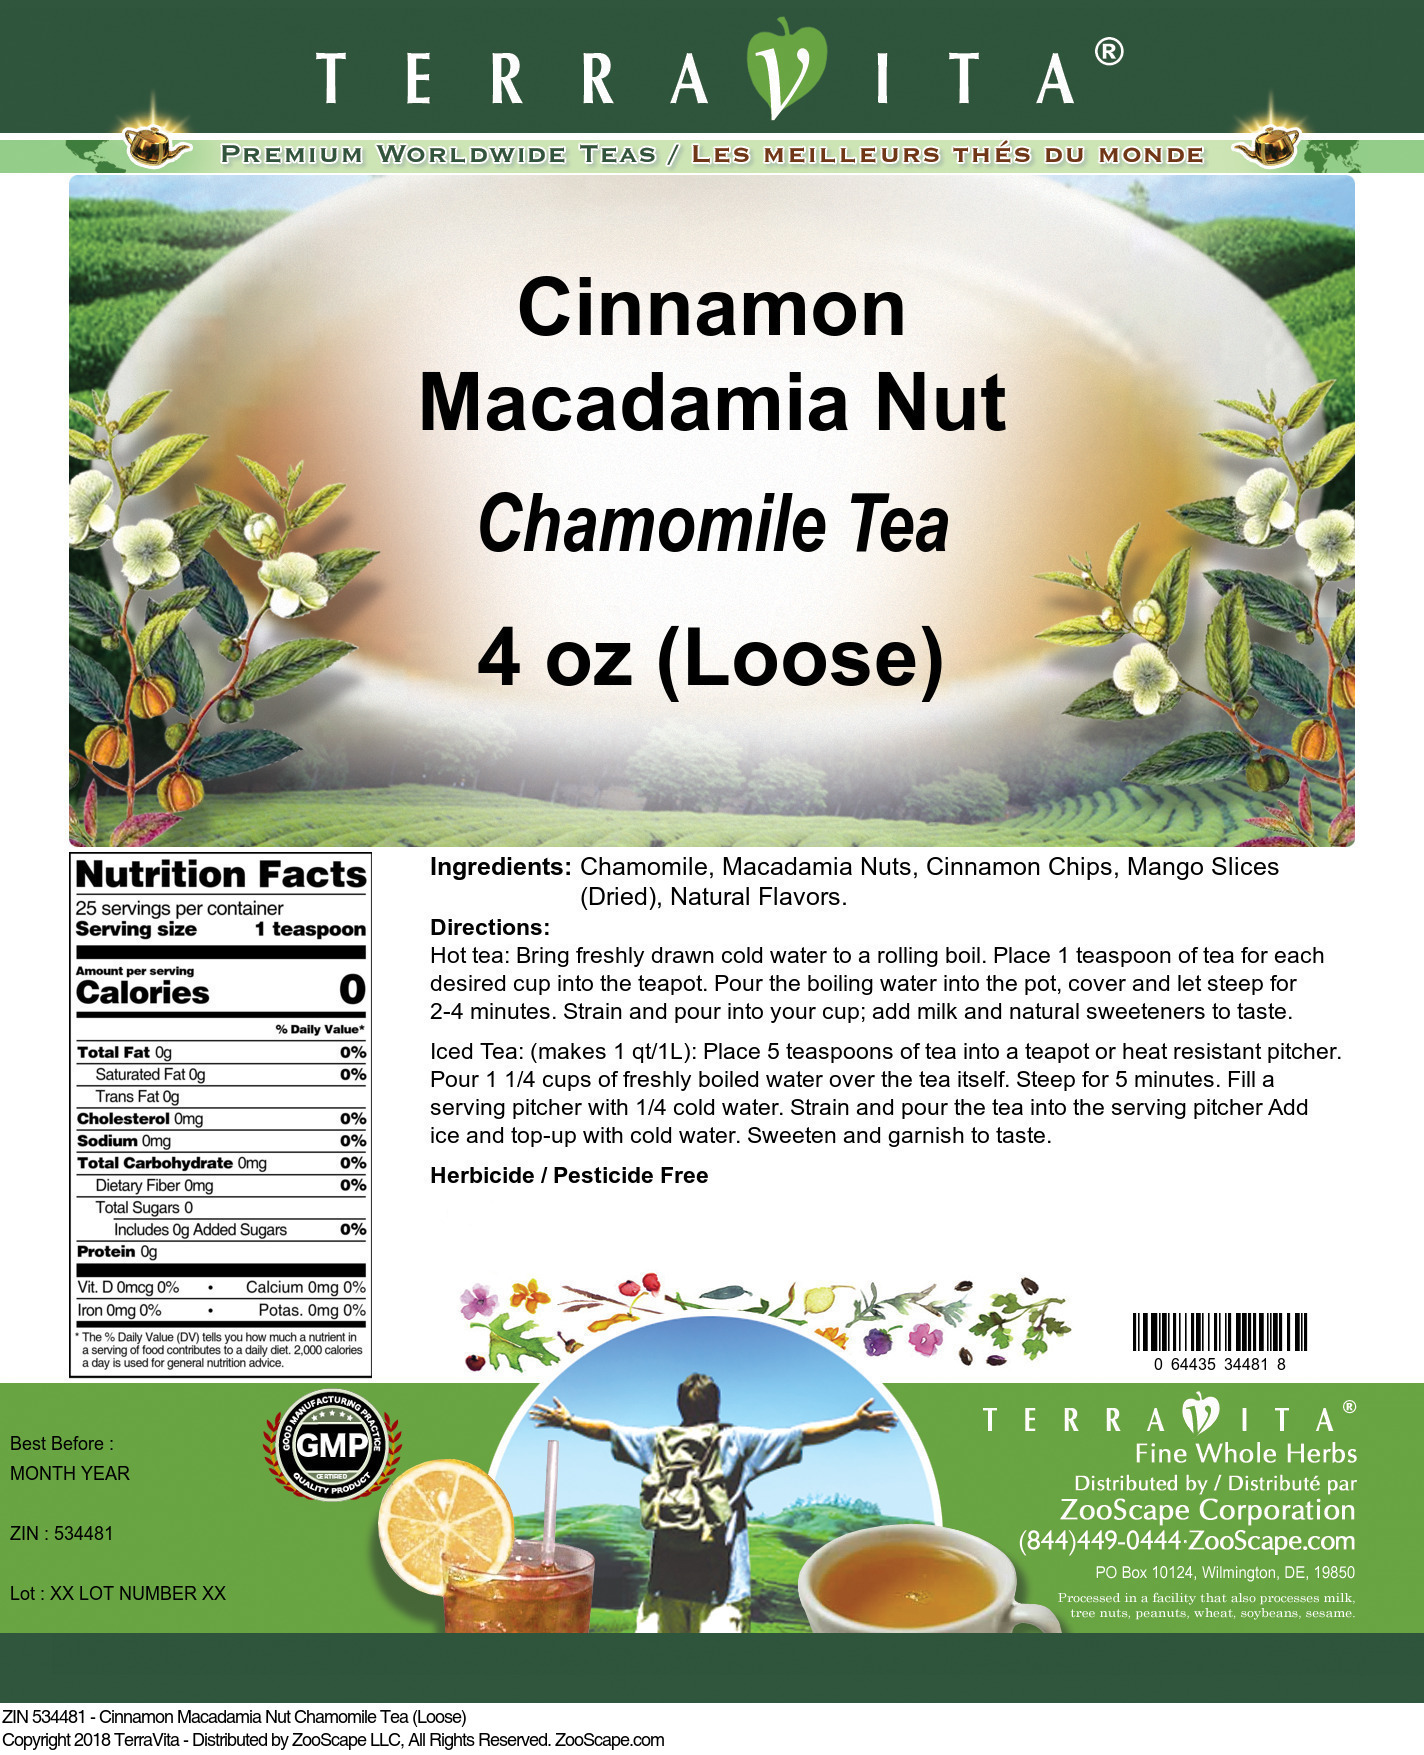 Cinnamon Macadamia Nut Chamomile Tea (Loose) - Label